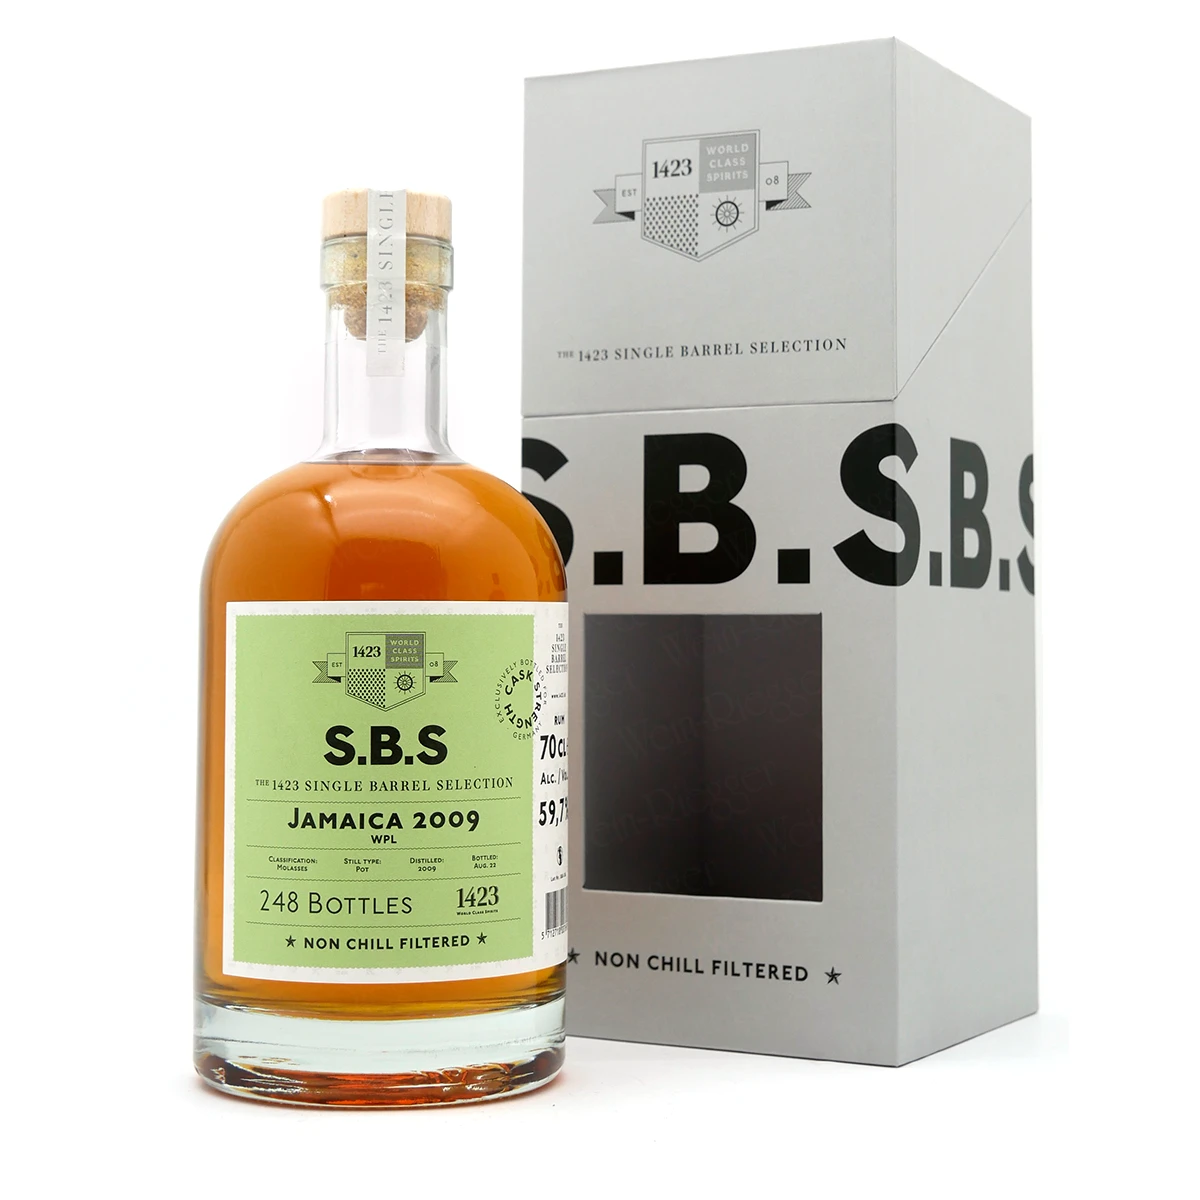 S.B.S. Jamaica Rum 2009